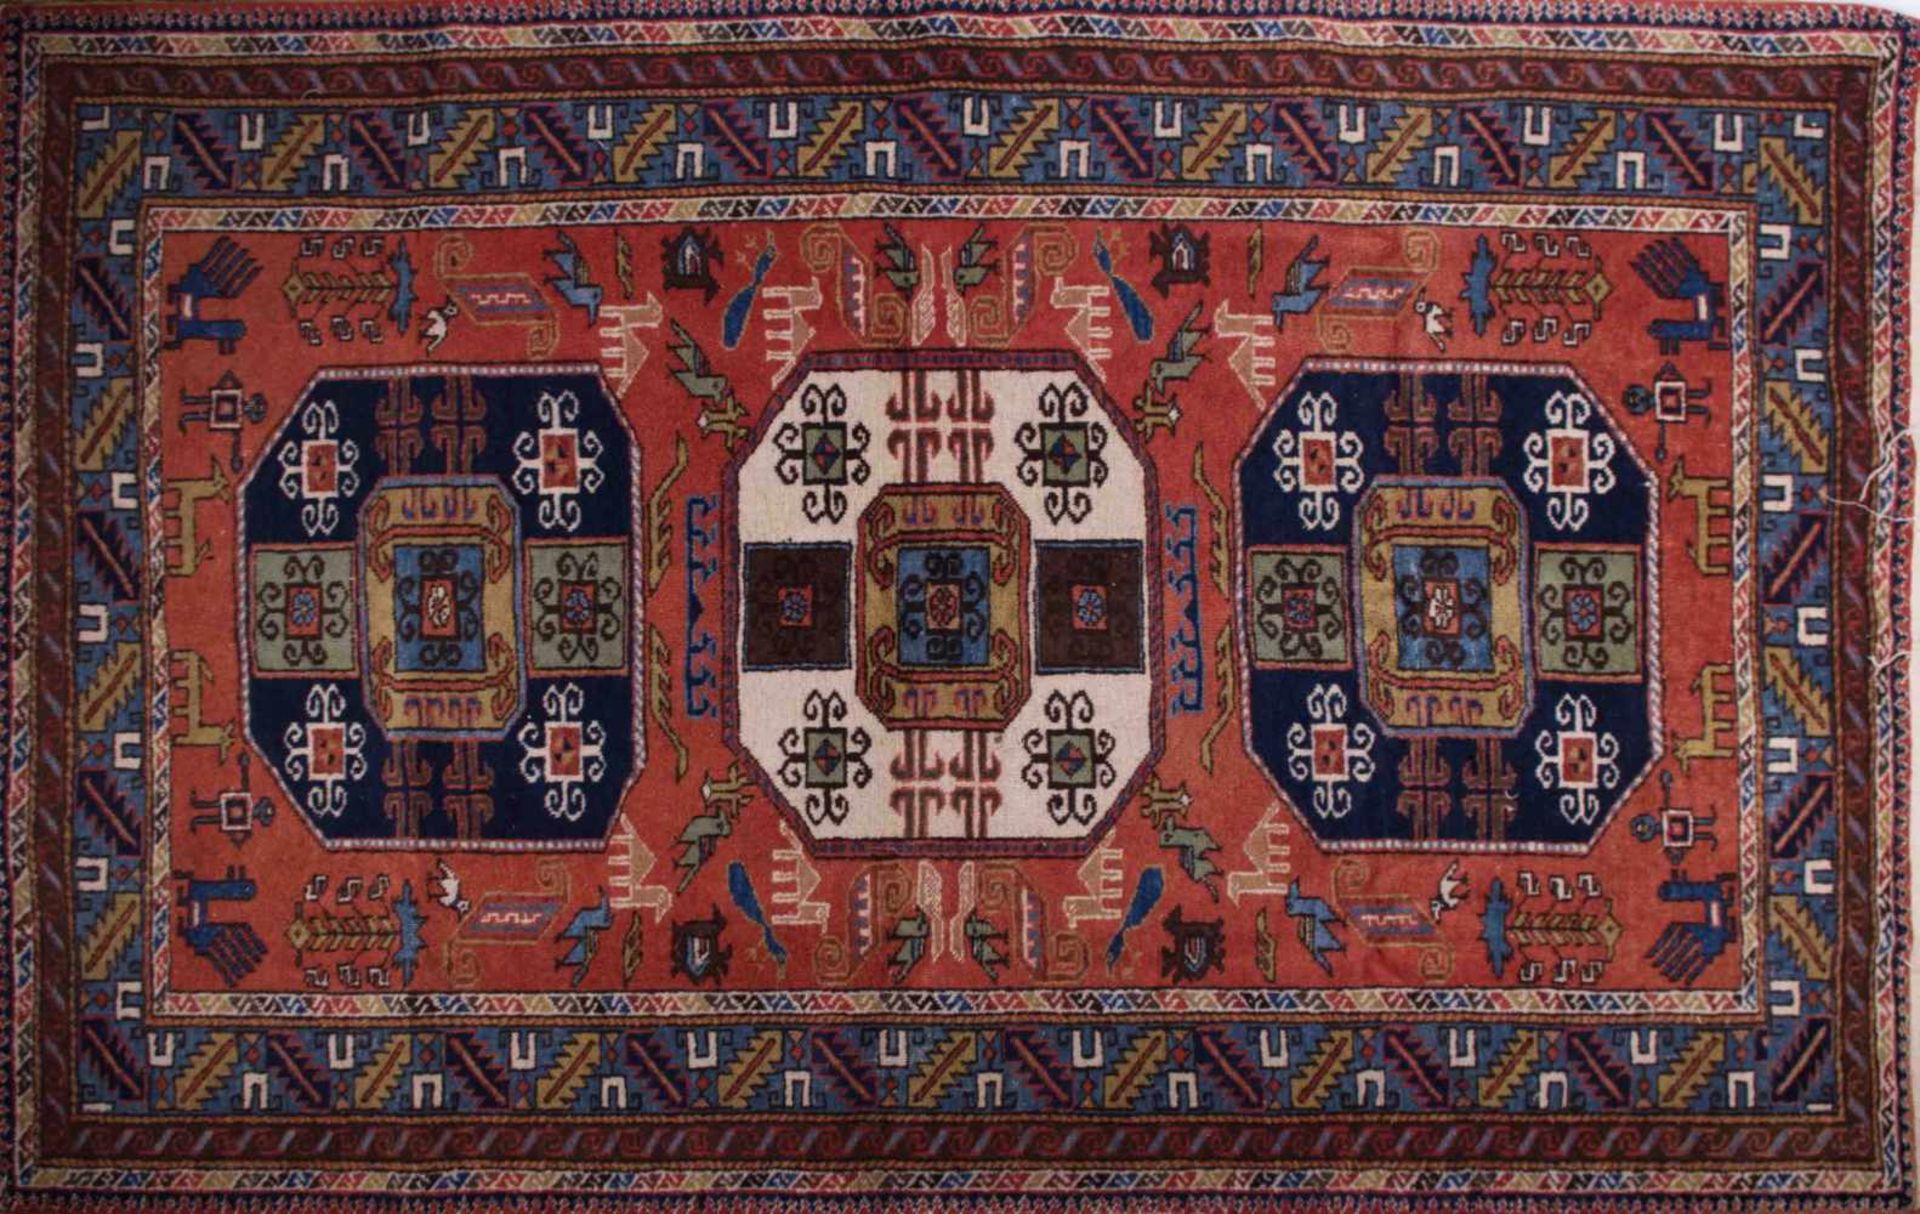 alter Orientalischer Teppich Handarbeit, ca. 240 cm x 140 cm, old oriental carpet handmade,